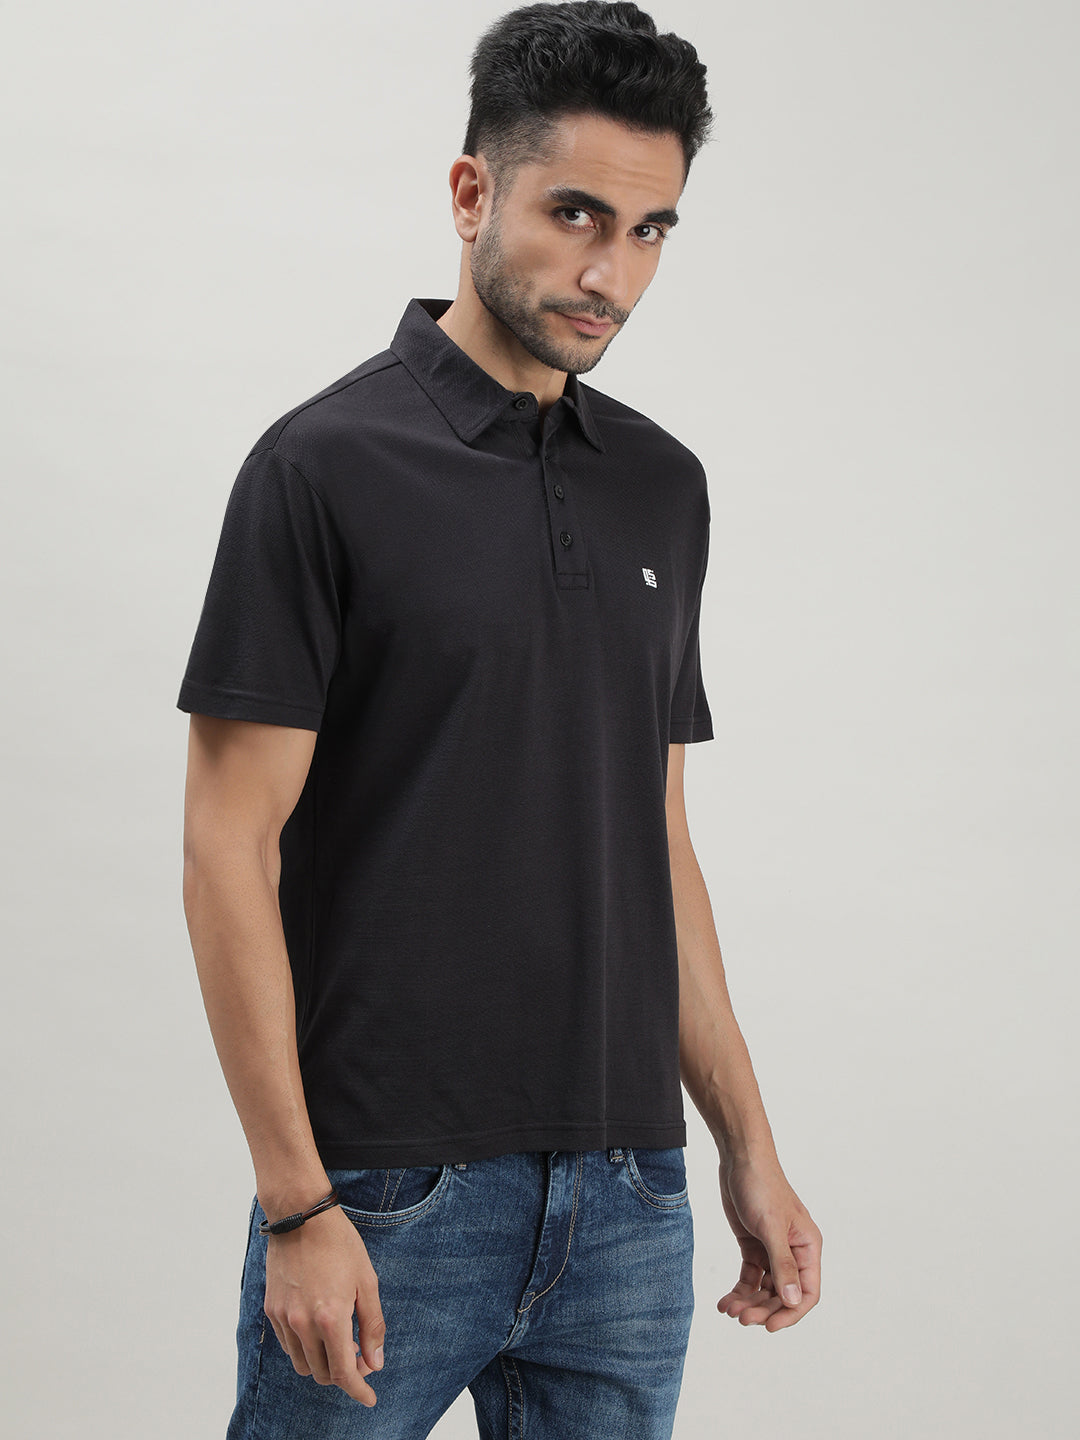 Black Mercerized Polo T-shirt for Men